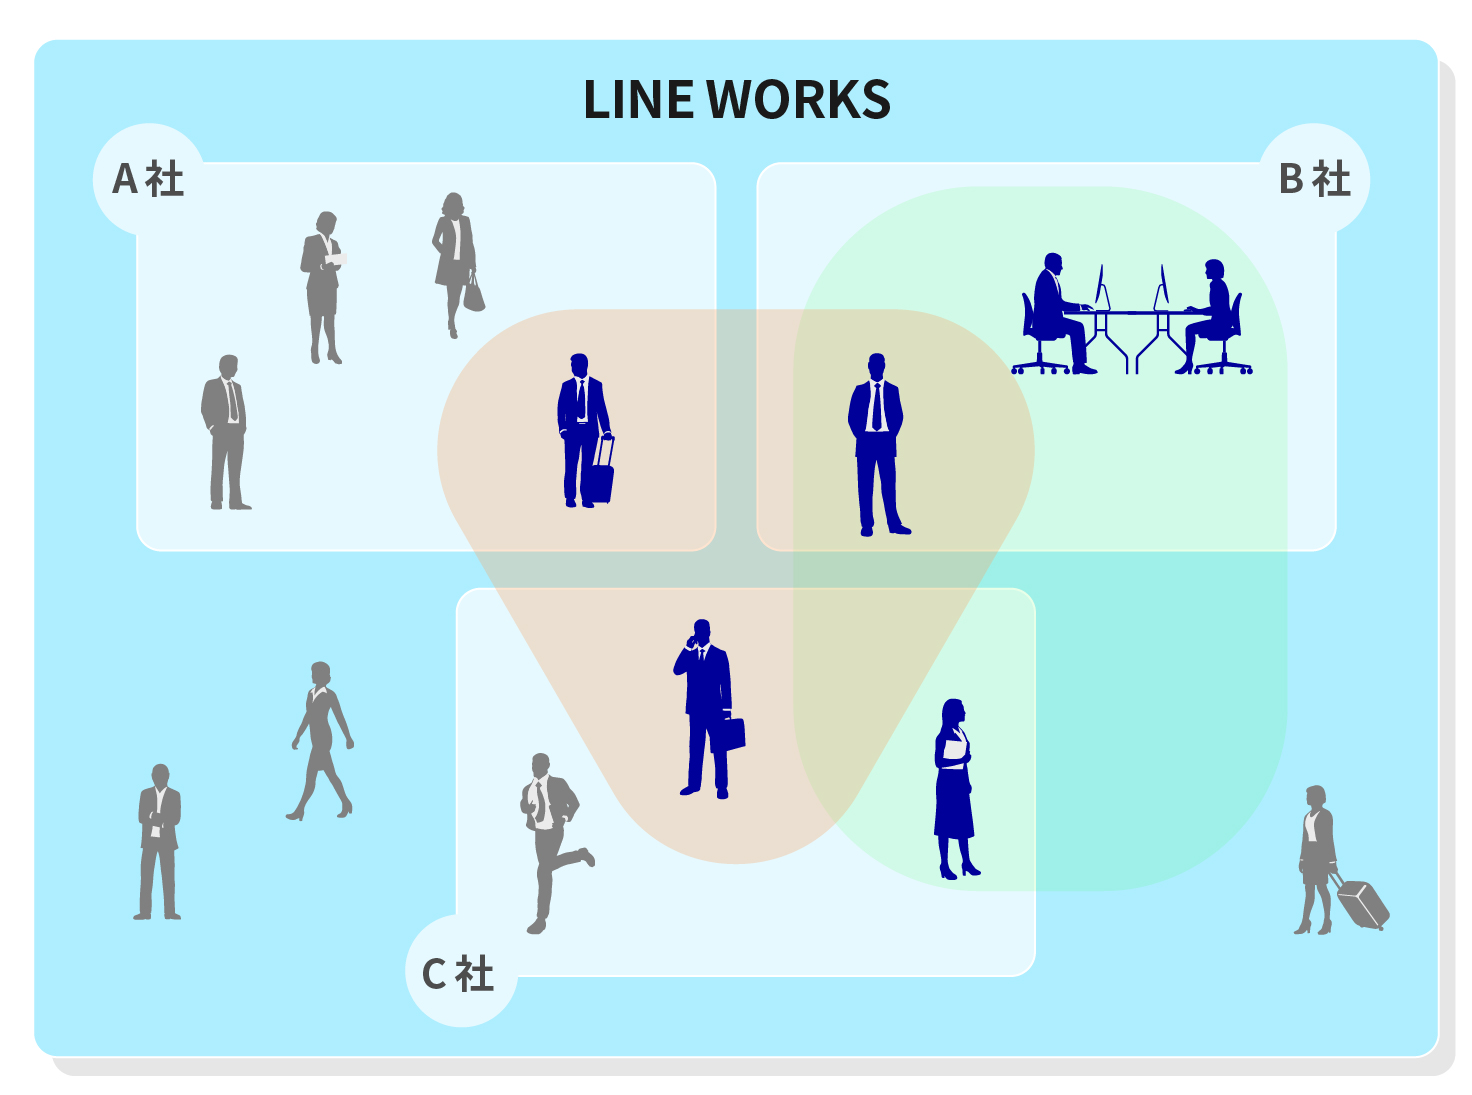 LINE WORKS 外部トーク連携機能